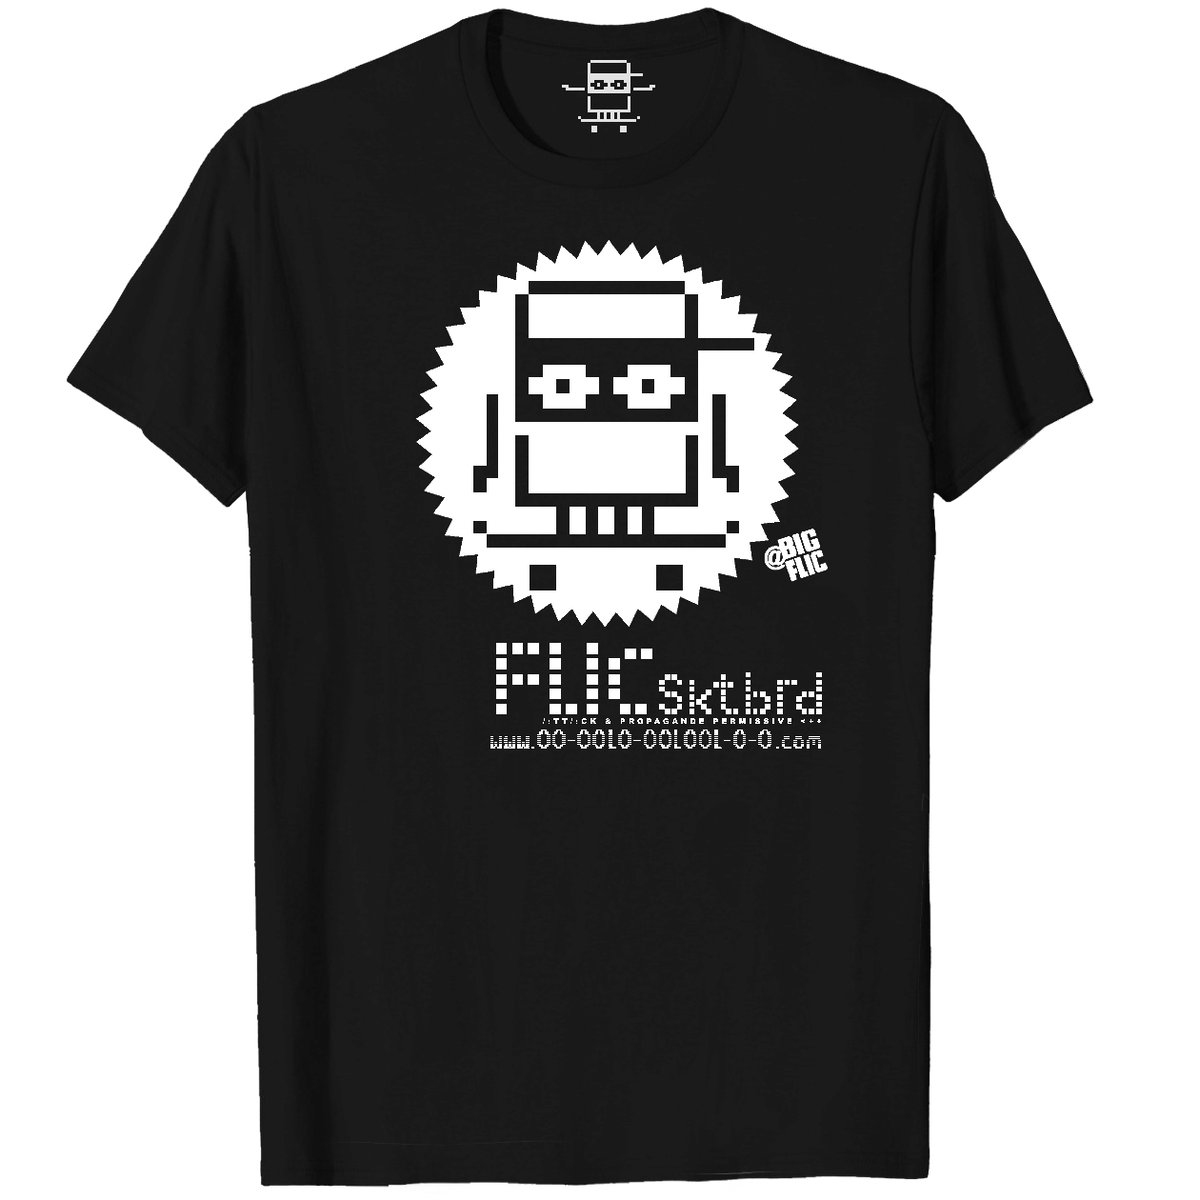 tee-shirts | flicsktbrd